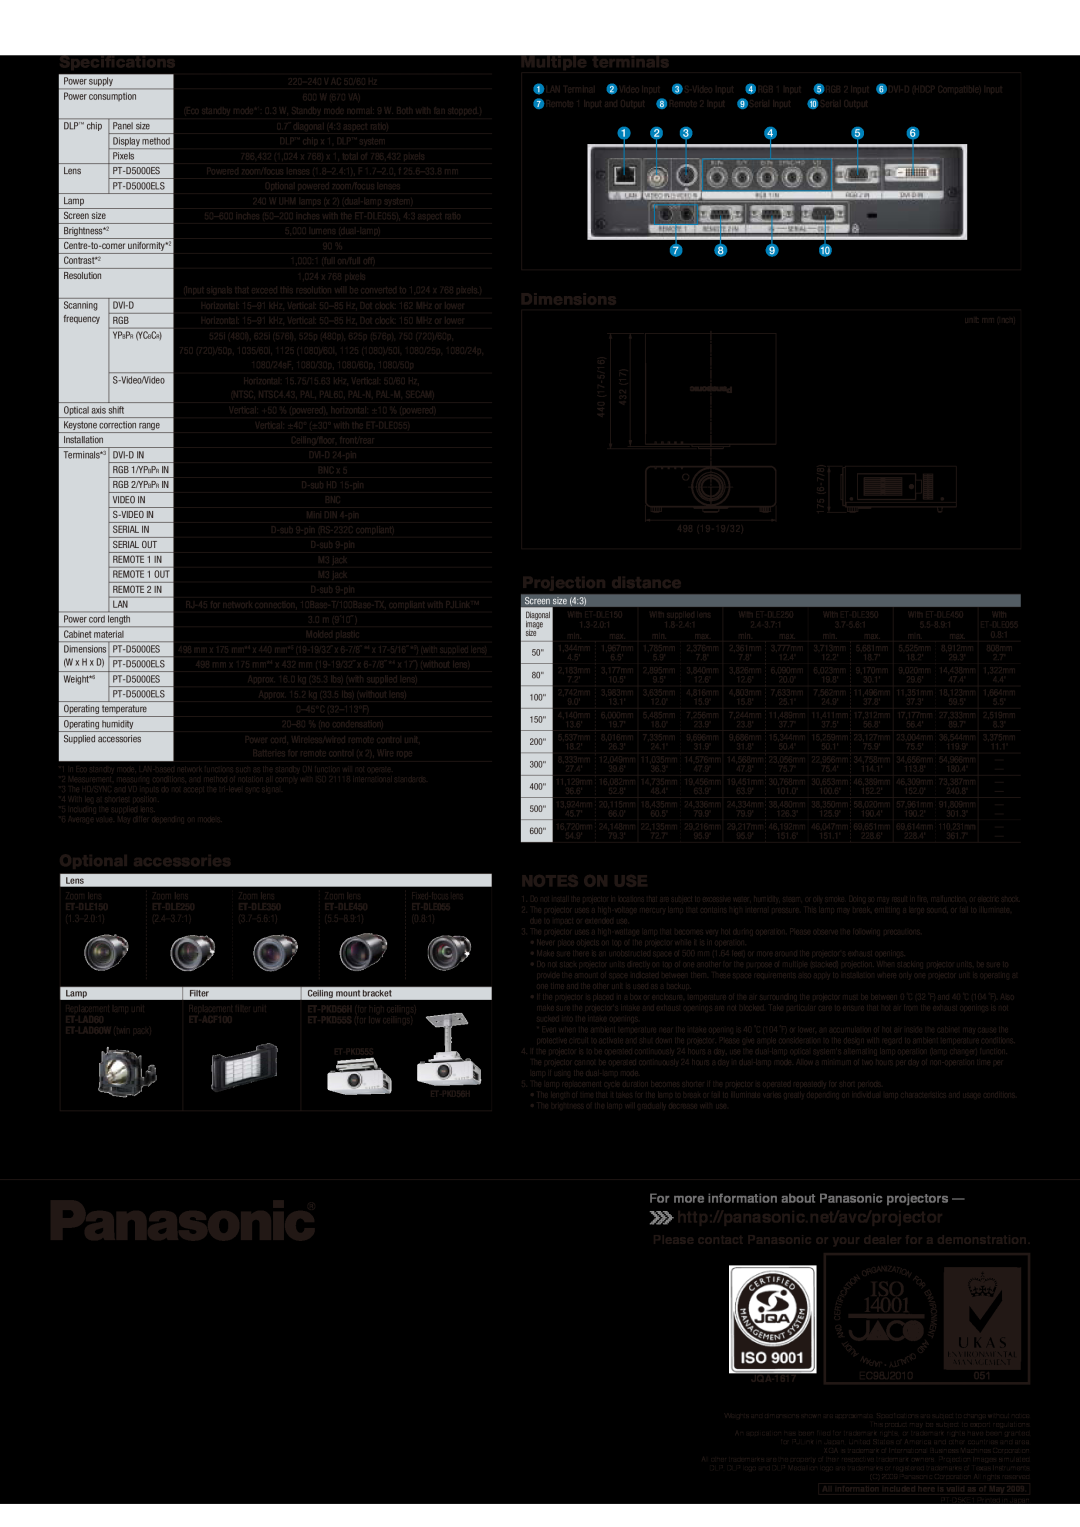 Panasonic PT-D5000ES http//panasonic.net/avc/projector, For more information about Panasonic projectors, ET-DLE150 